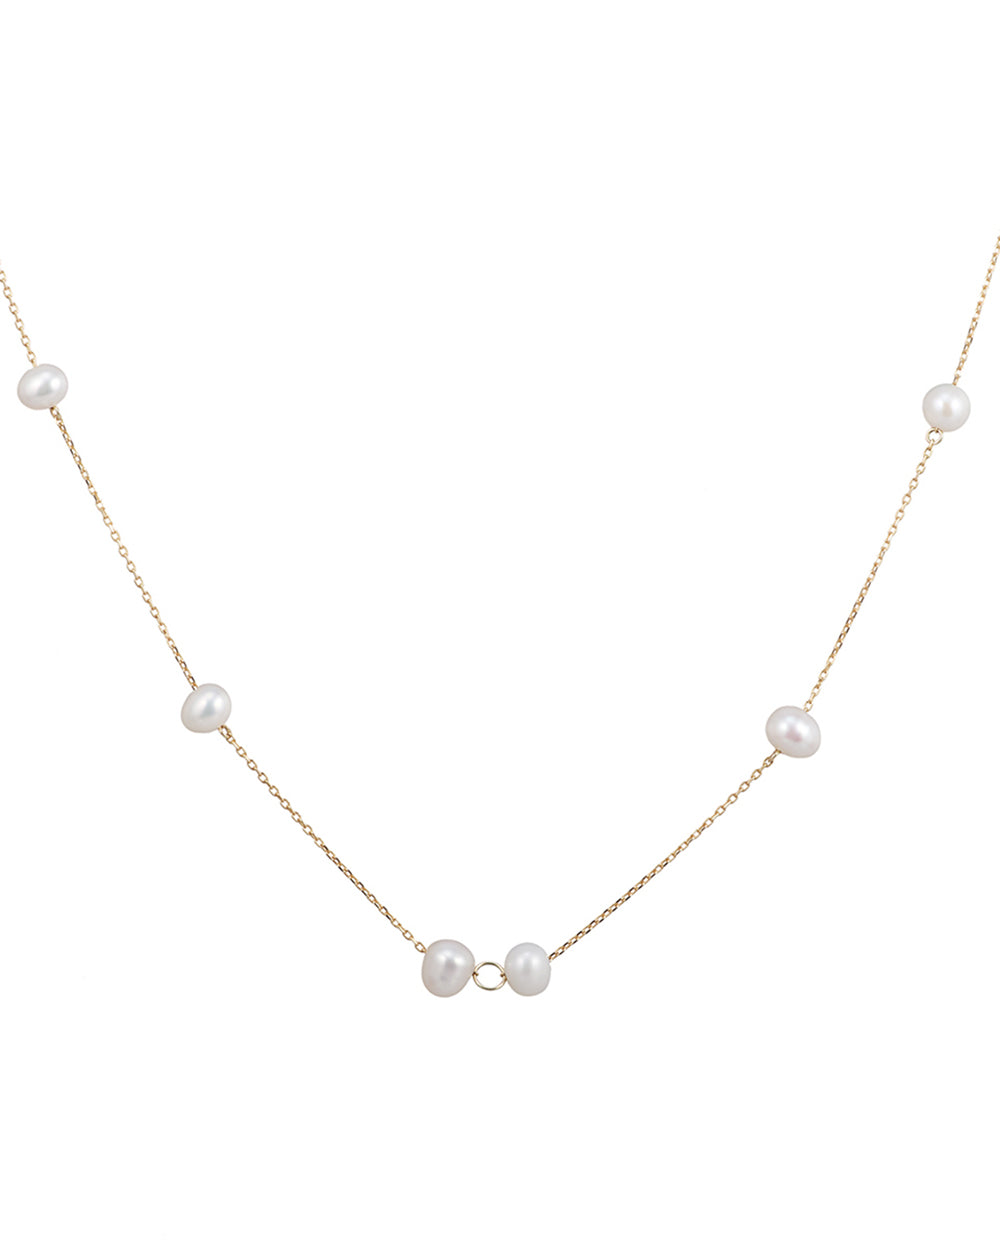 SM05 Lane long white pearl necklace